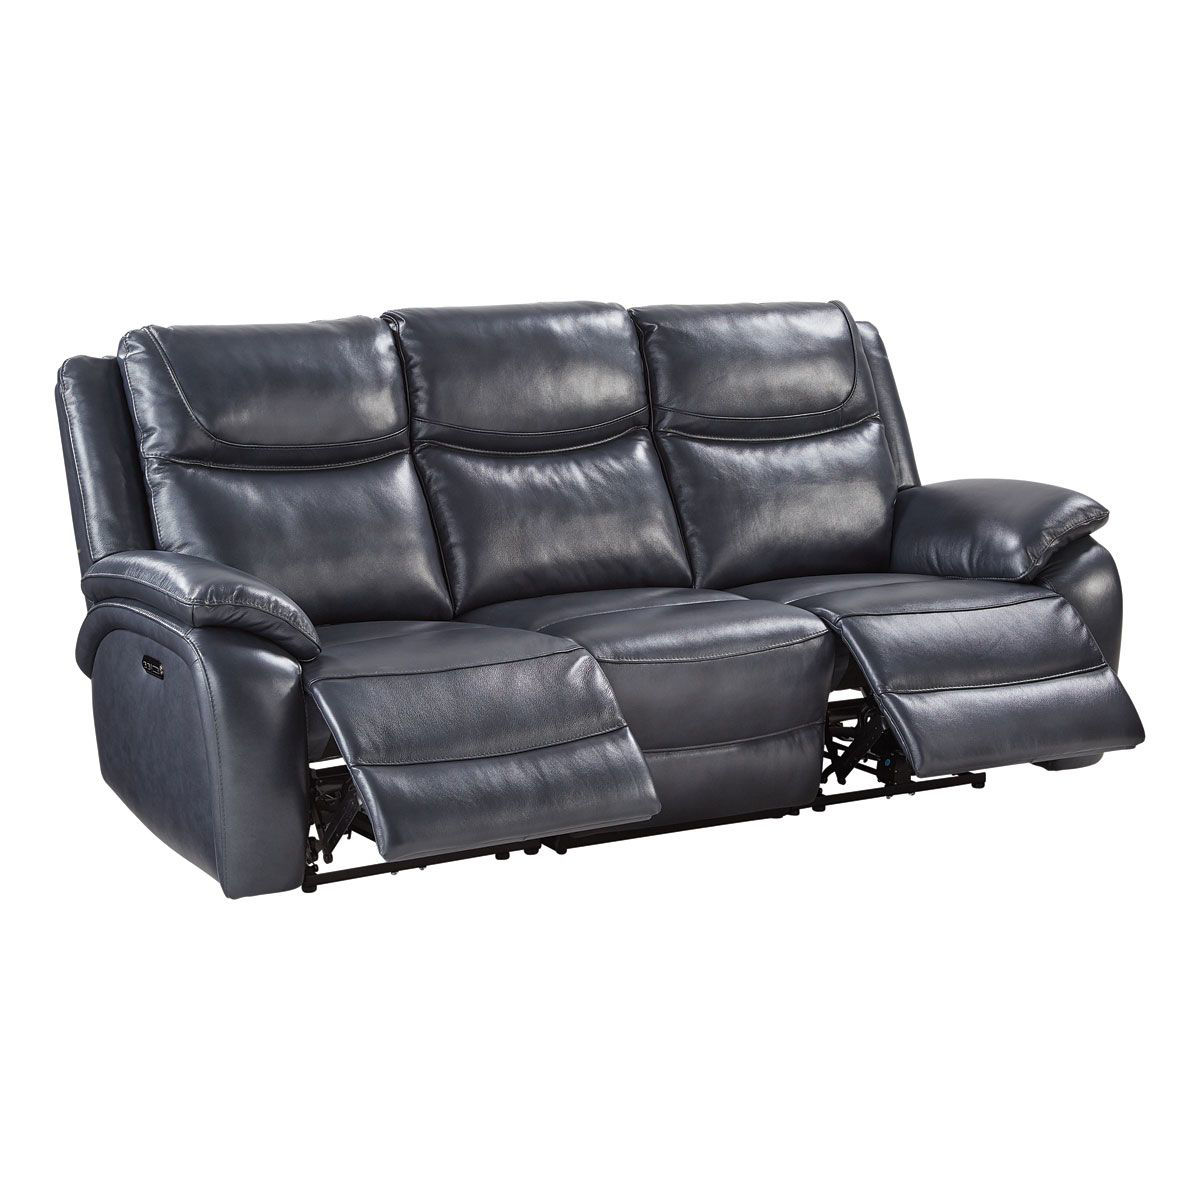 LENNOX SOFA  Badcock Home Furniture &more